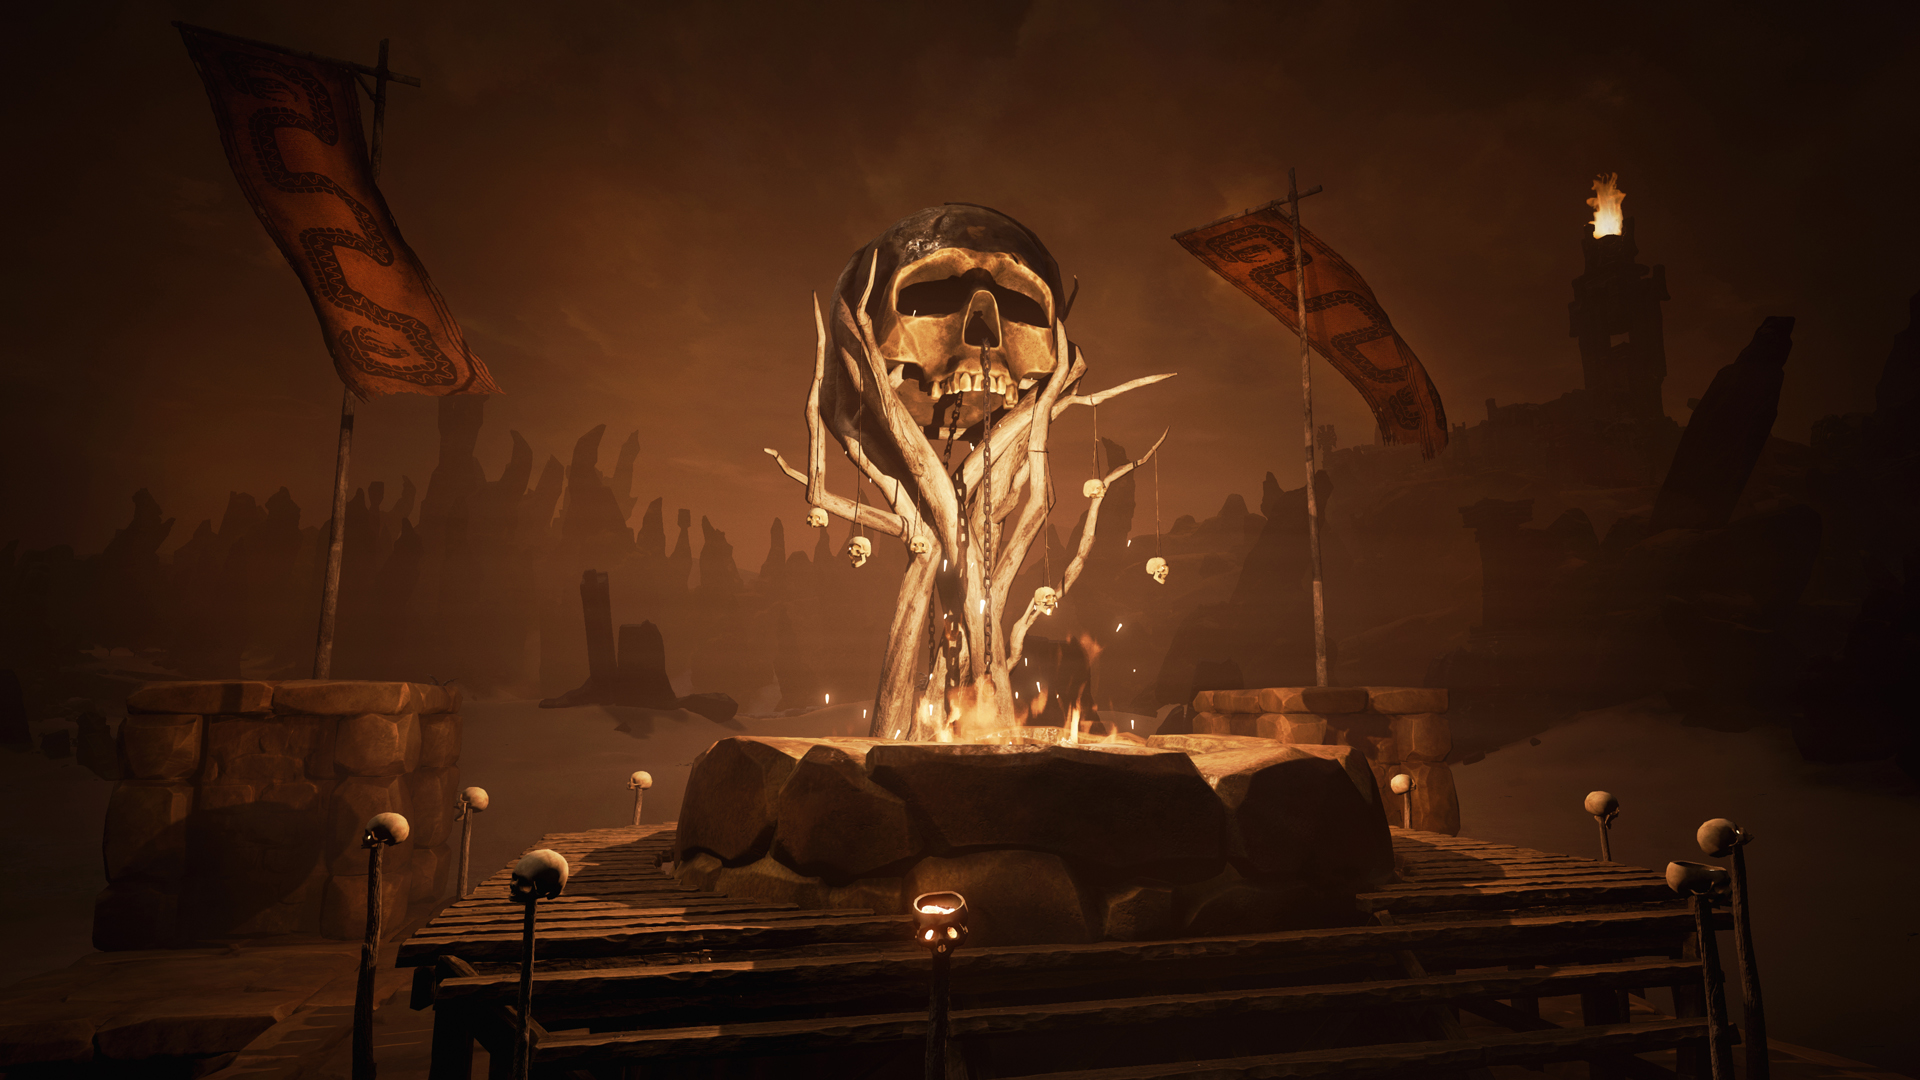 Wallpaper Skull, Conan exiles video game, 2017 game